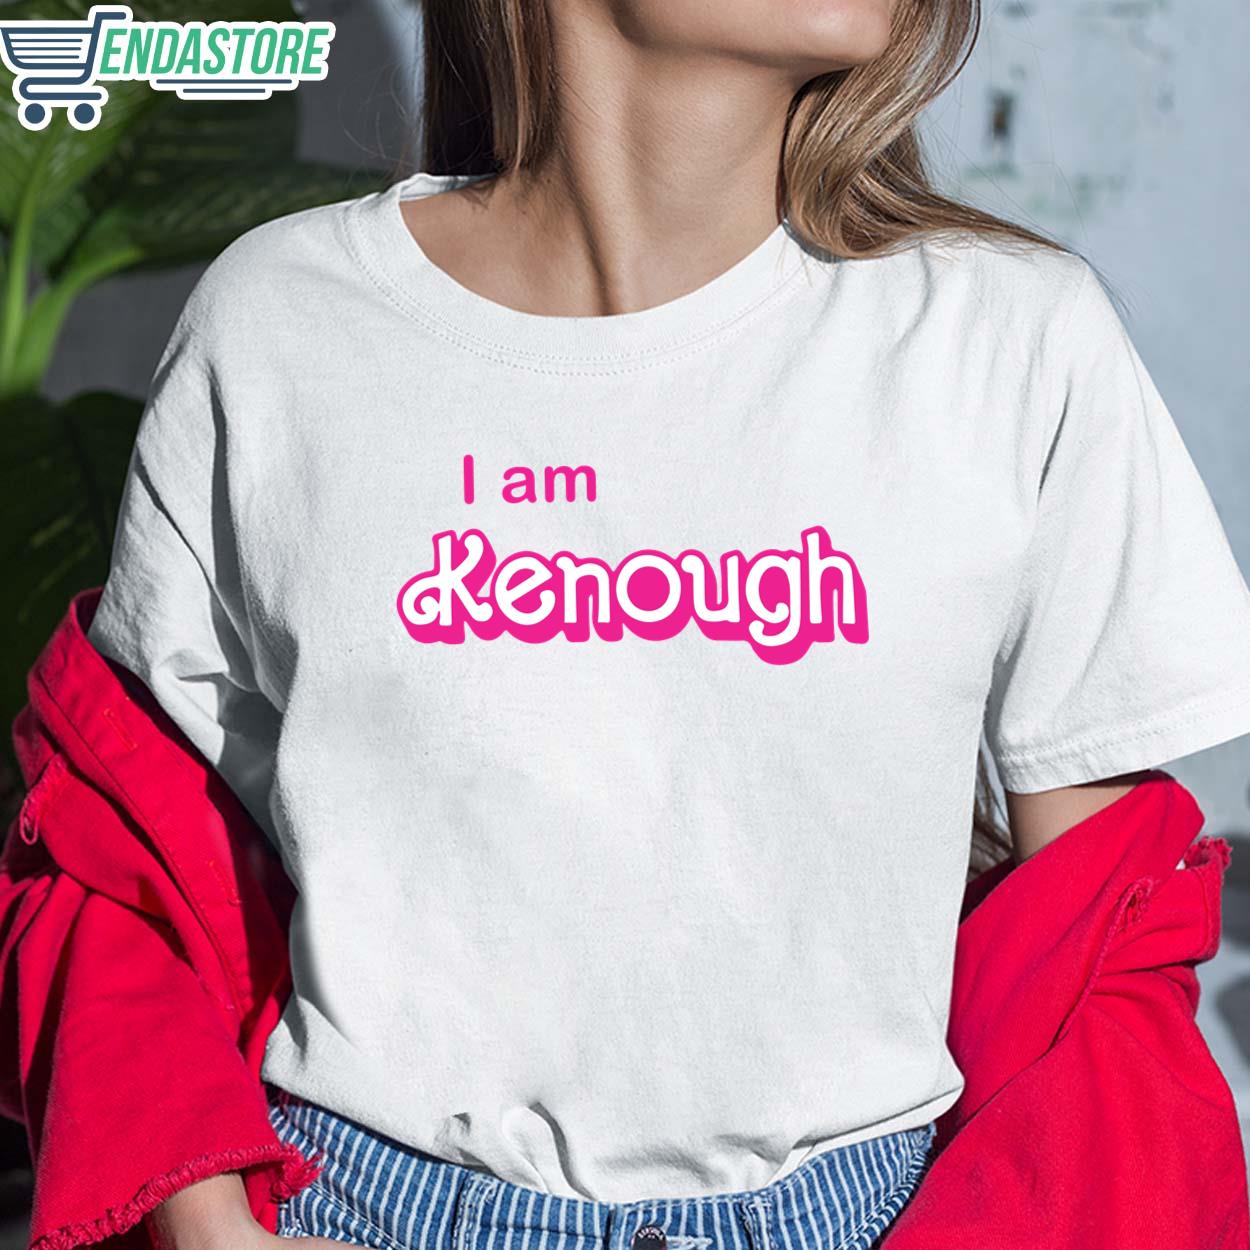 Ryan Gosling I Am Kenough T-Shirt - Endastore.com